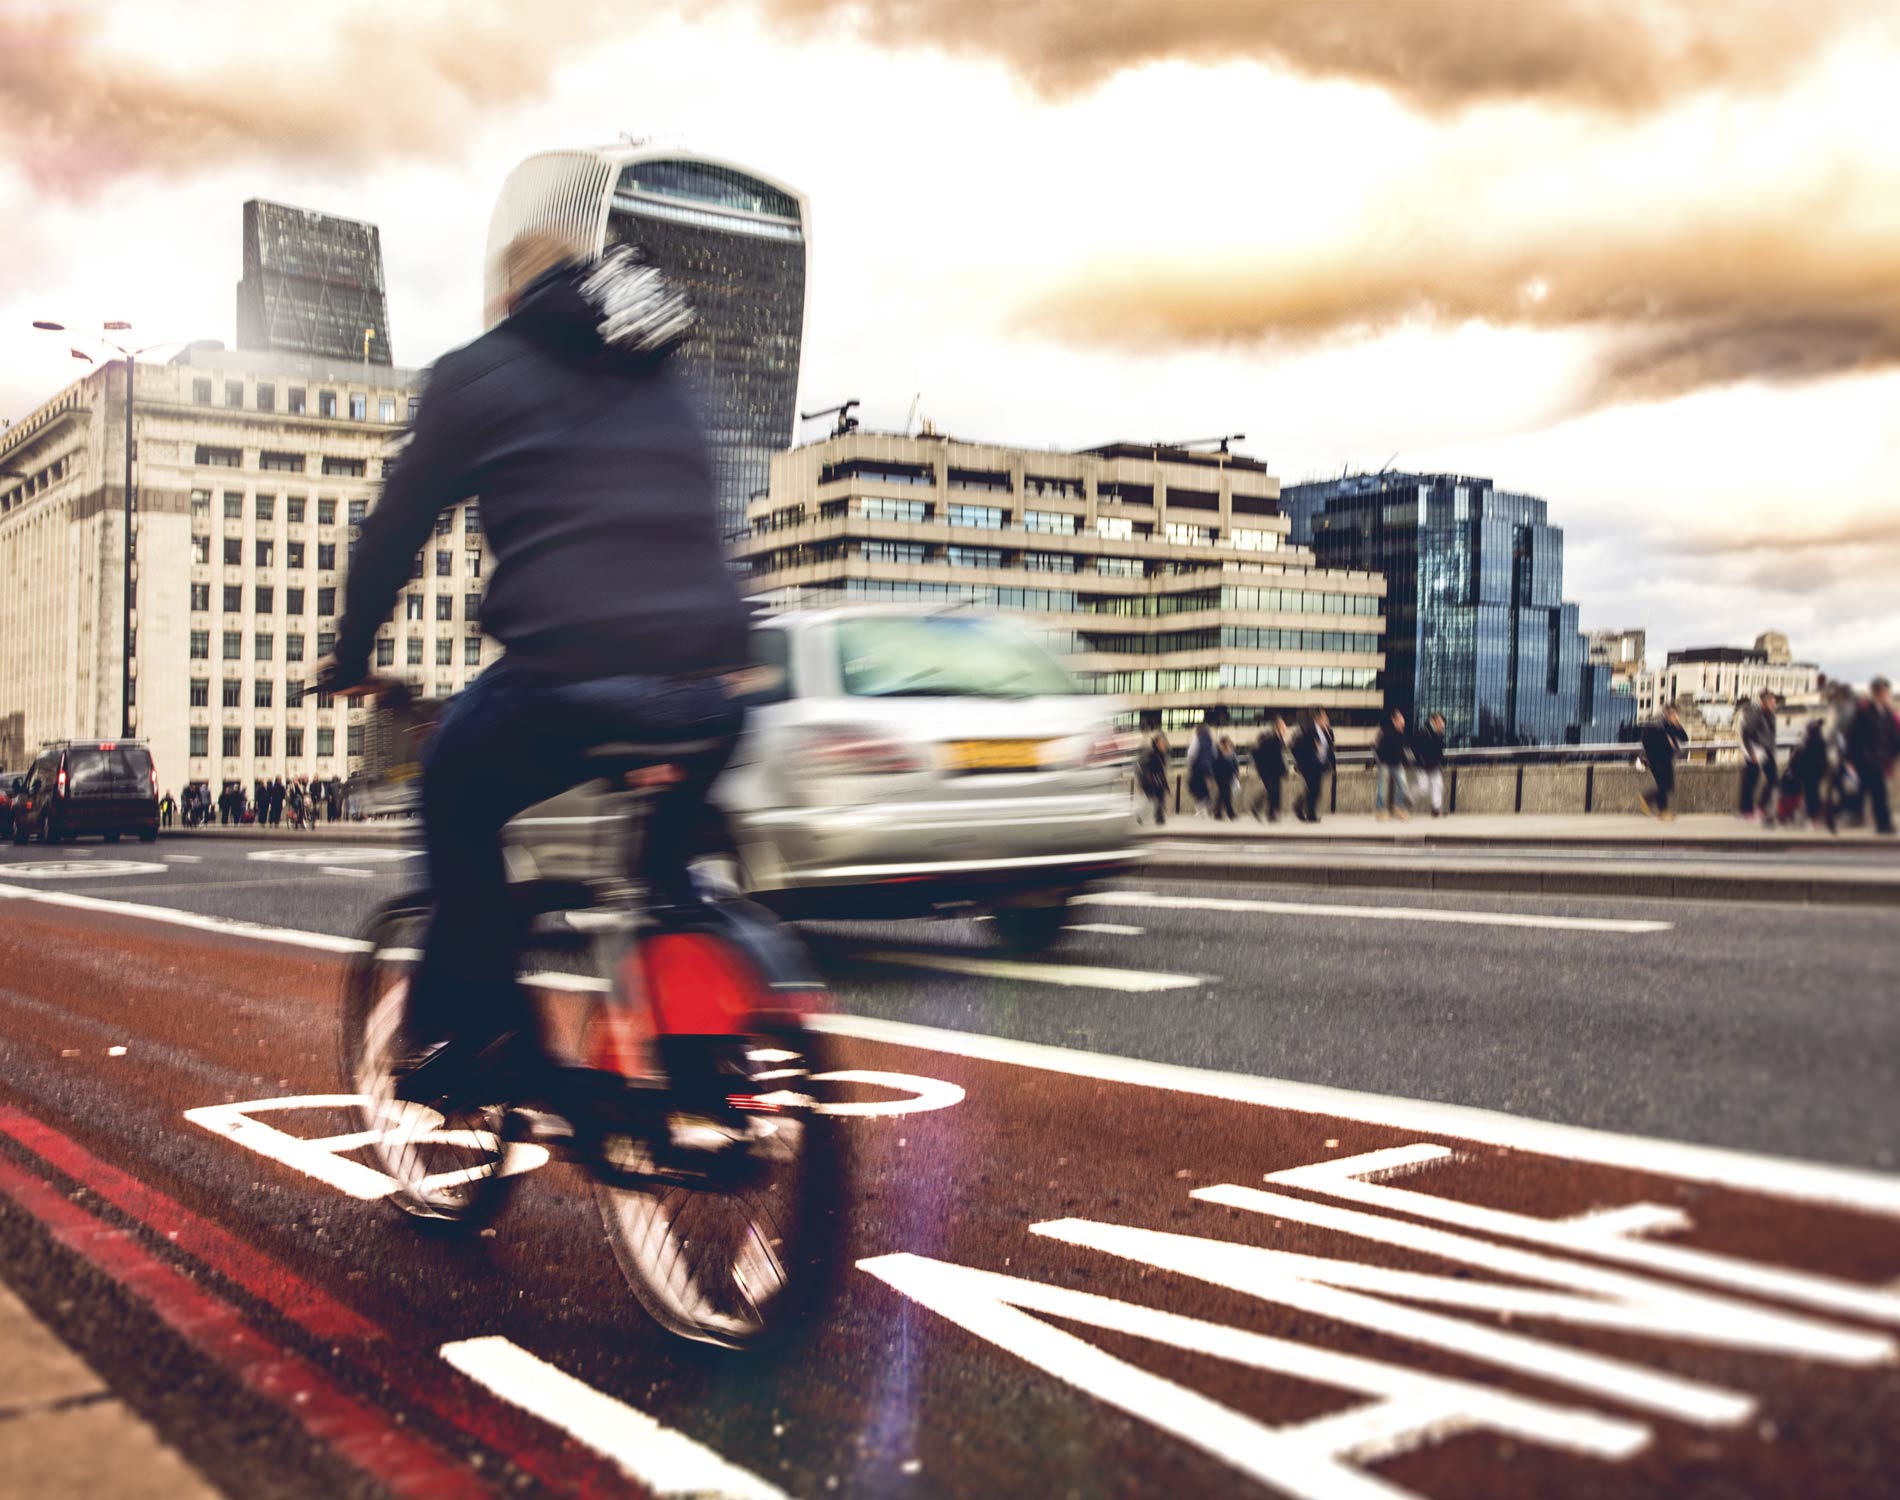 Bike lane in London